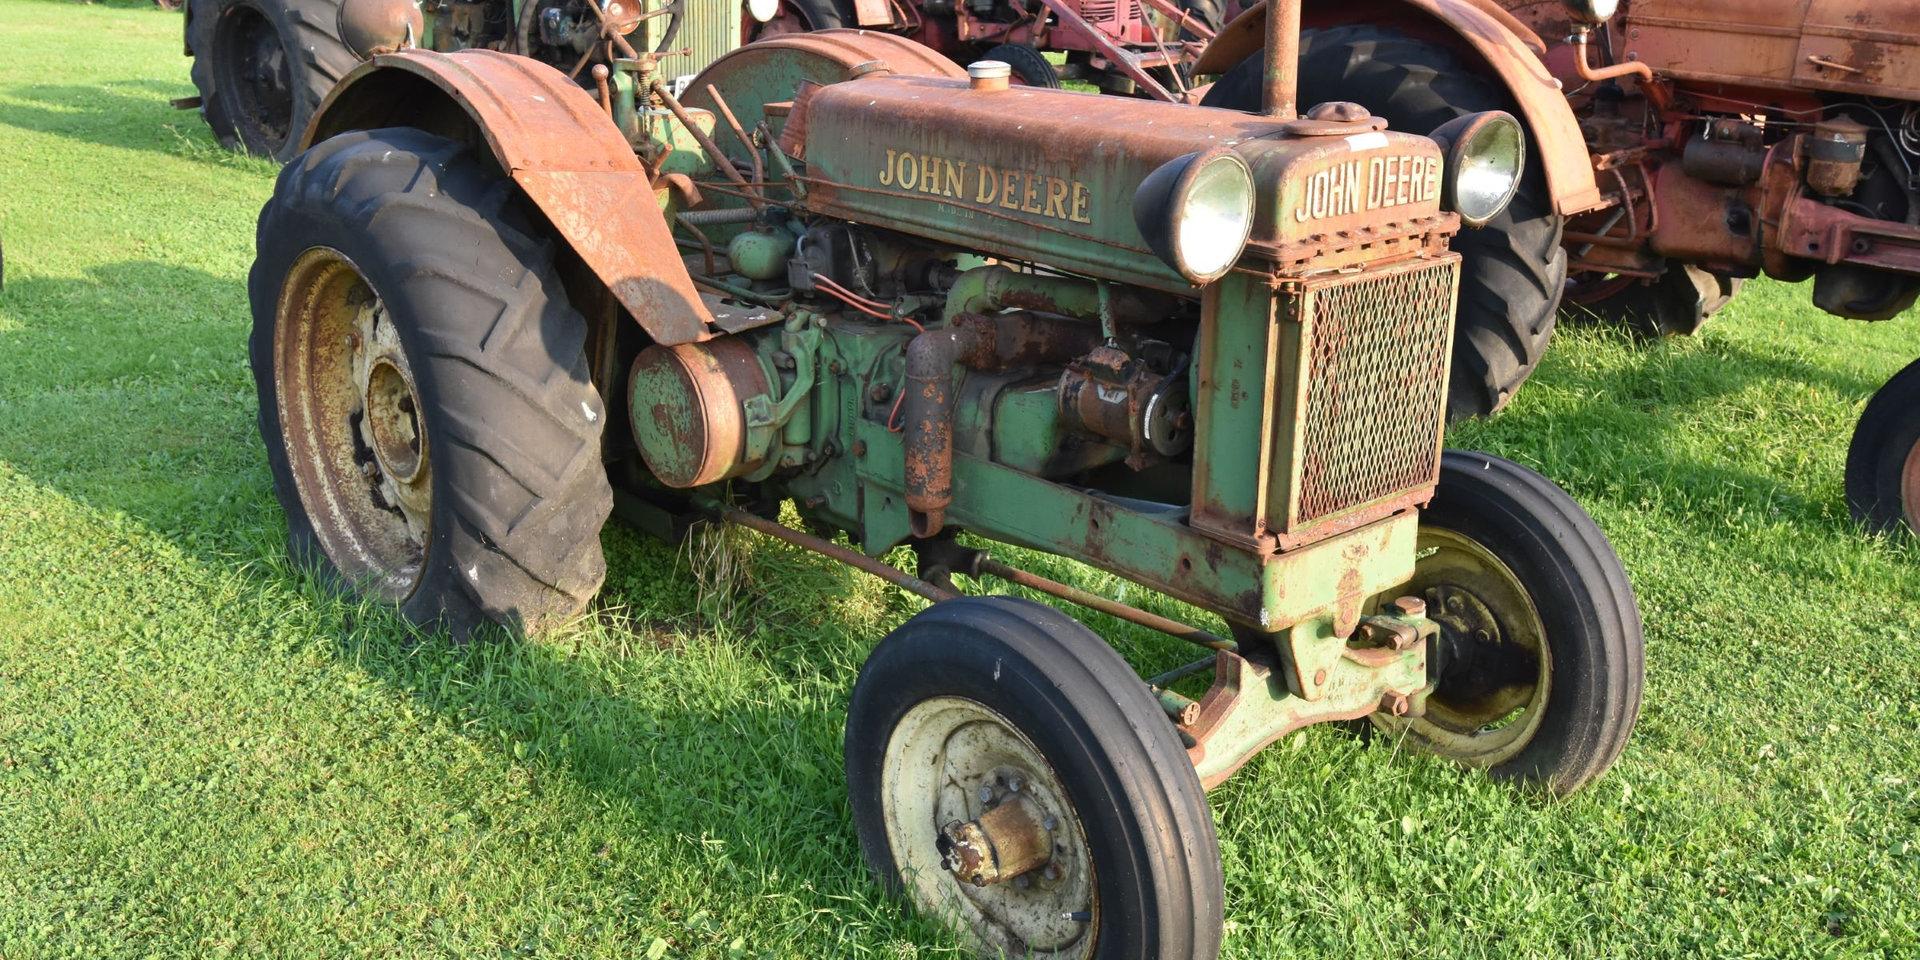 En John Deere-traktor från 1938 var en av godbitarna som såldes på auktionen.